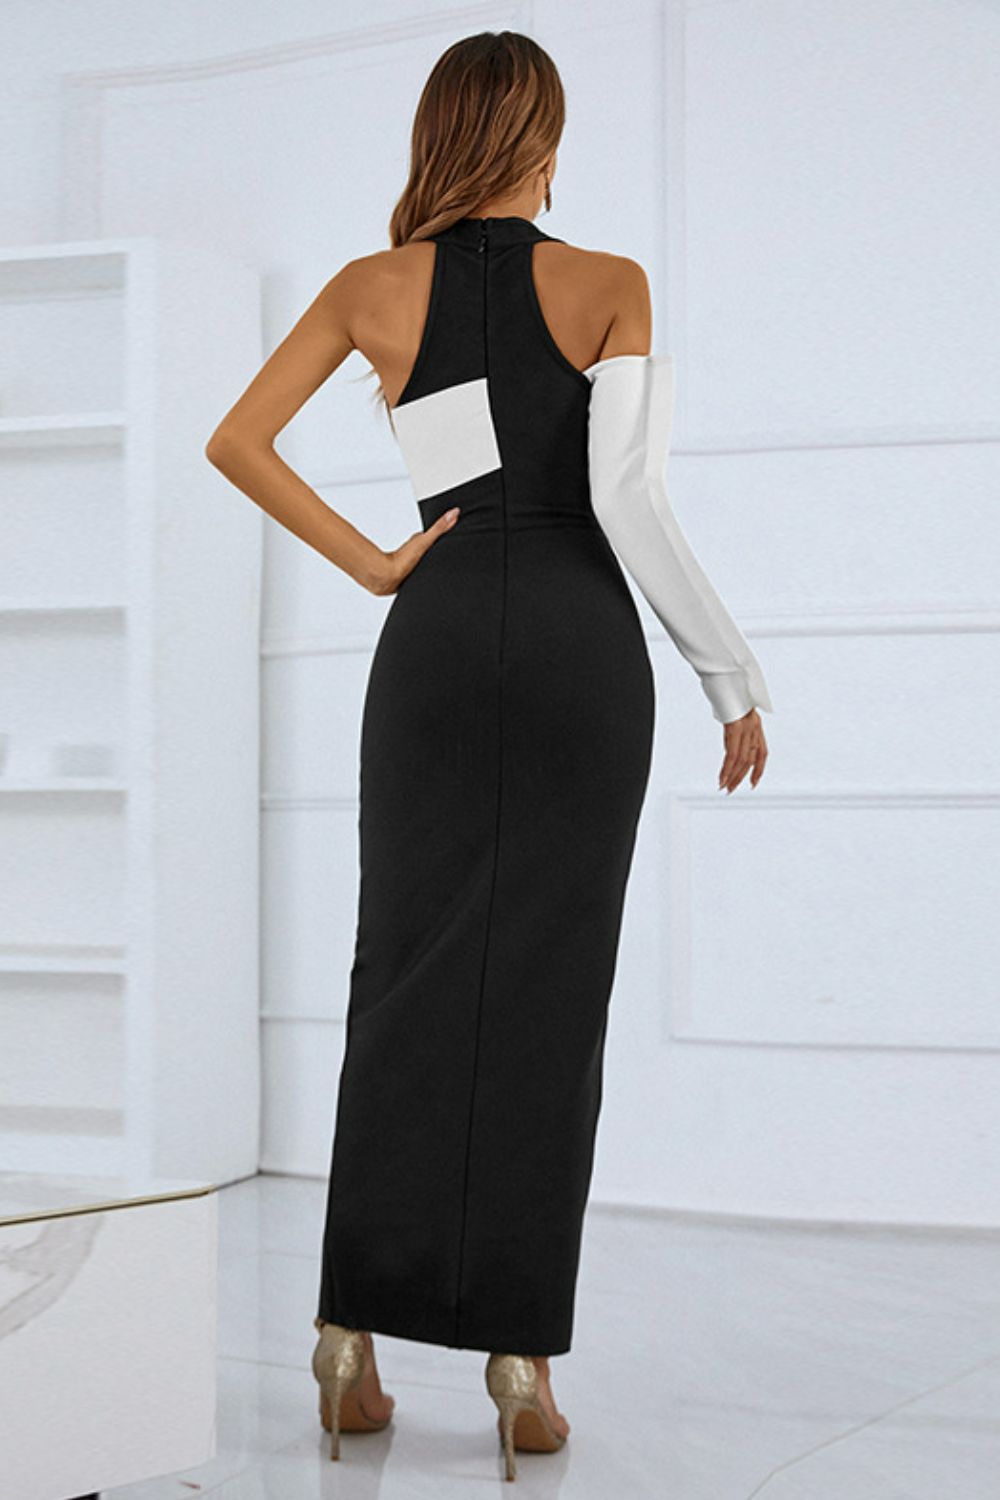 Two-Tone Grecian Split Maxi Dress - Women &amp; Men Fashion Store | JL Fashion Store